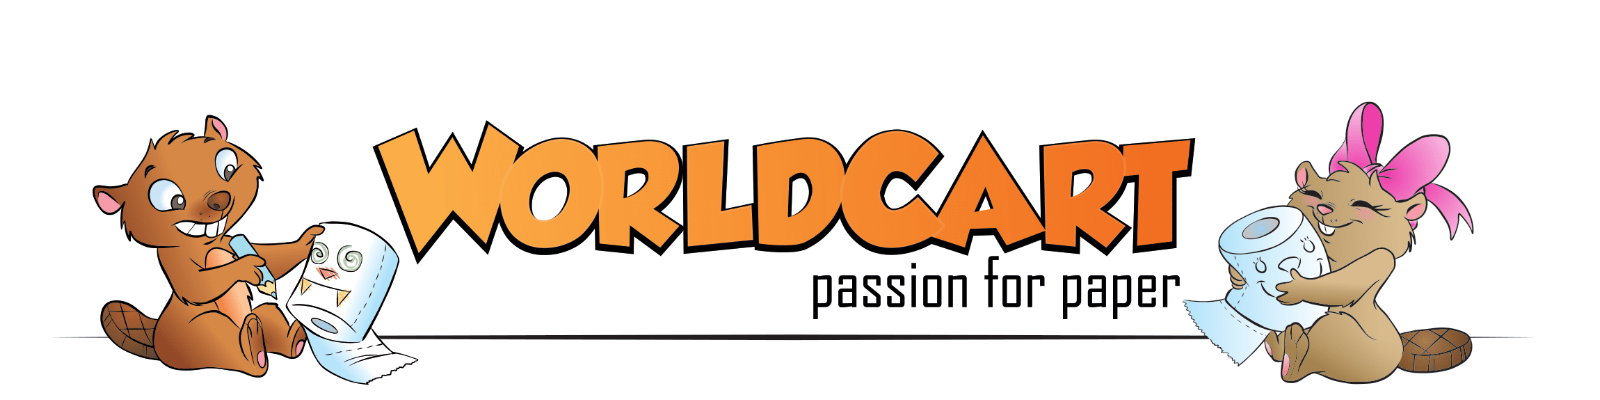 Logo World Cart